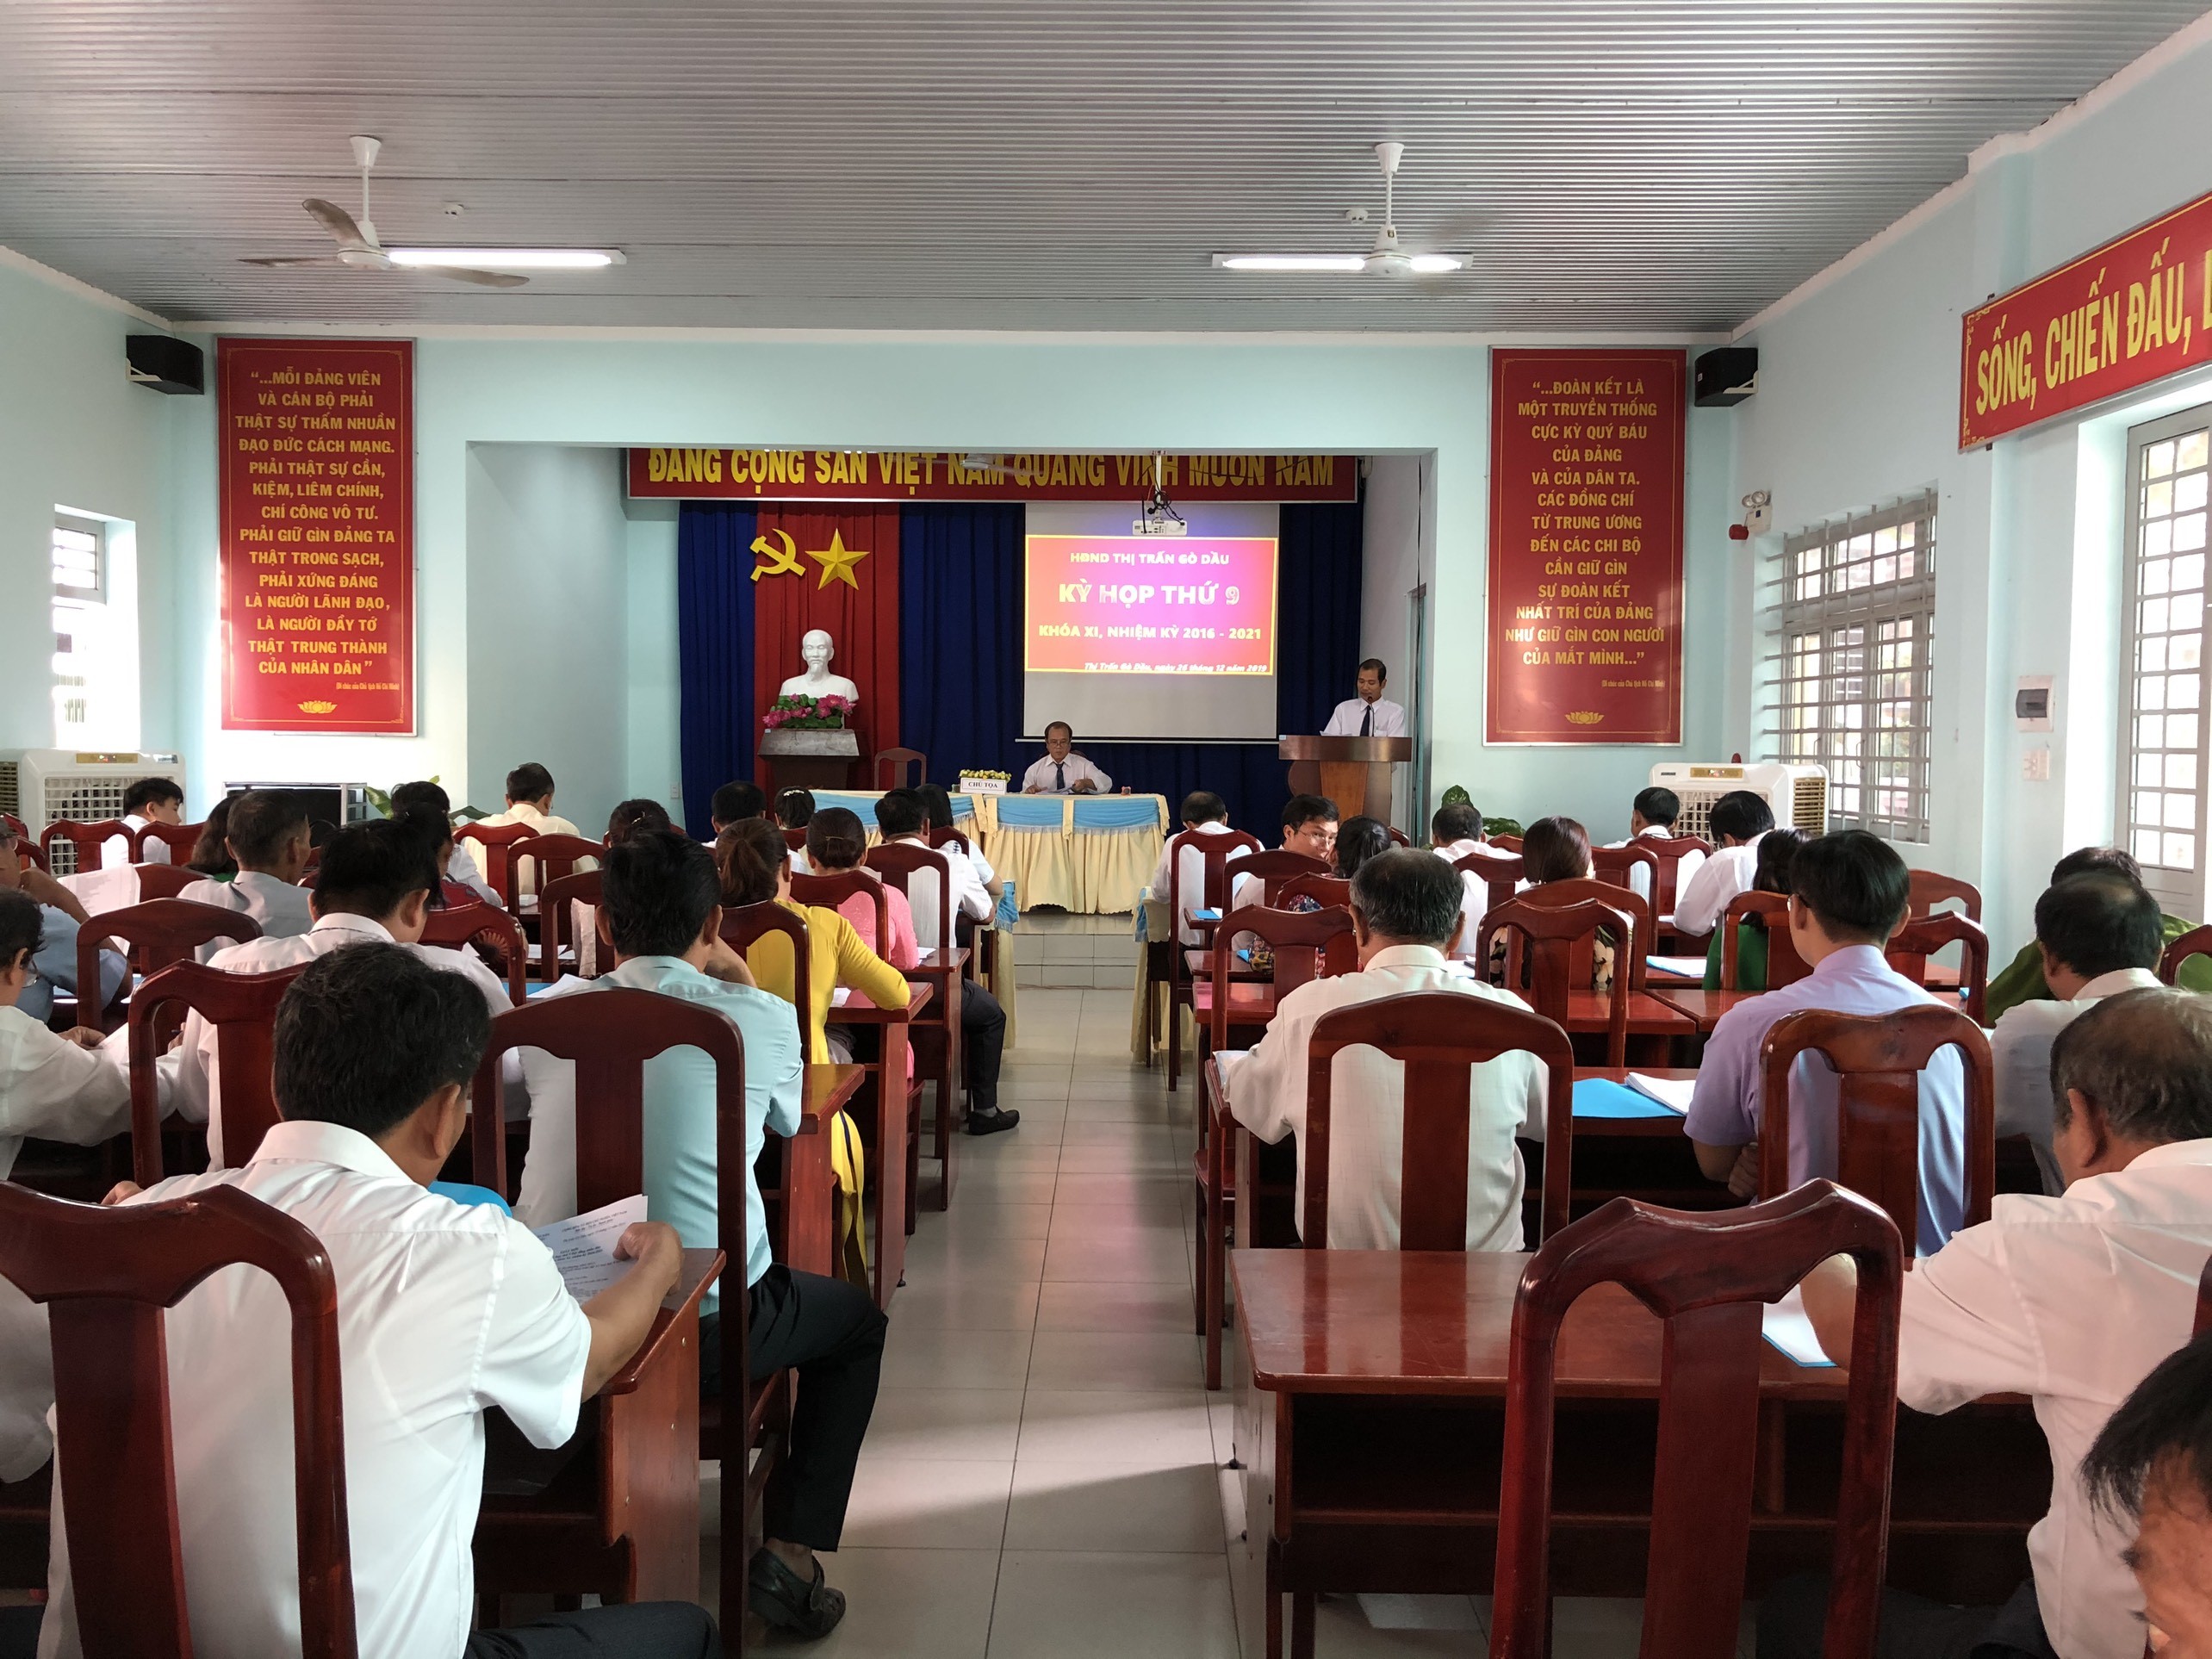 Hội đồng nhân dân thị trấn Gò Dầu, huyện Gò Dầu: Tổ chức kỳ họp thứ 9 khóa XI, nhiệm kỳ 2016-2021